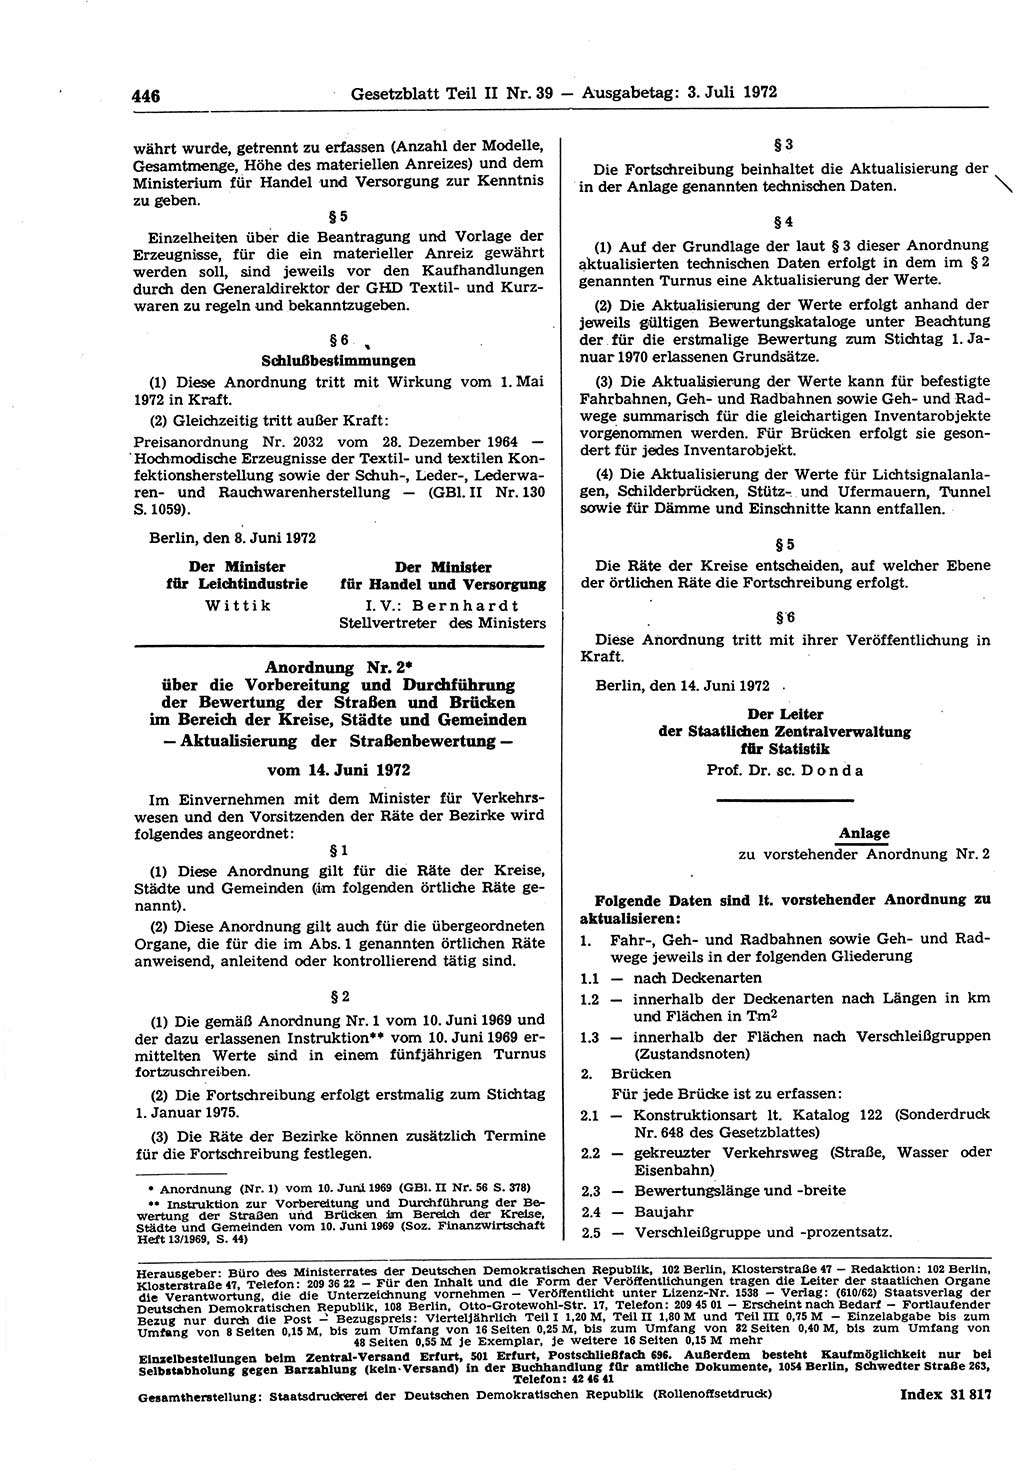 Gesetzblatt (GBl.) der Deutschen Demokratischen Republik (DDR) Teil ⅠⅠ 1972, Seite 446 (GBl. DDR ⅠⅠ 1972, S. 446)